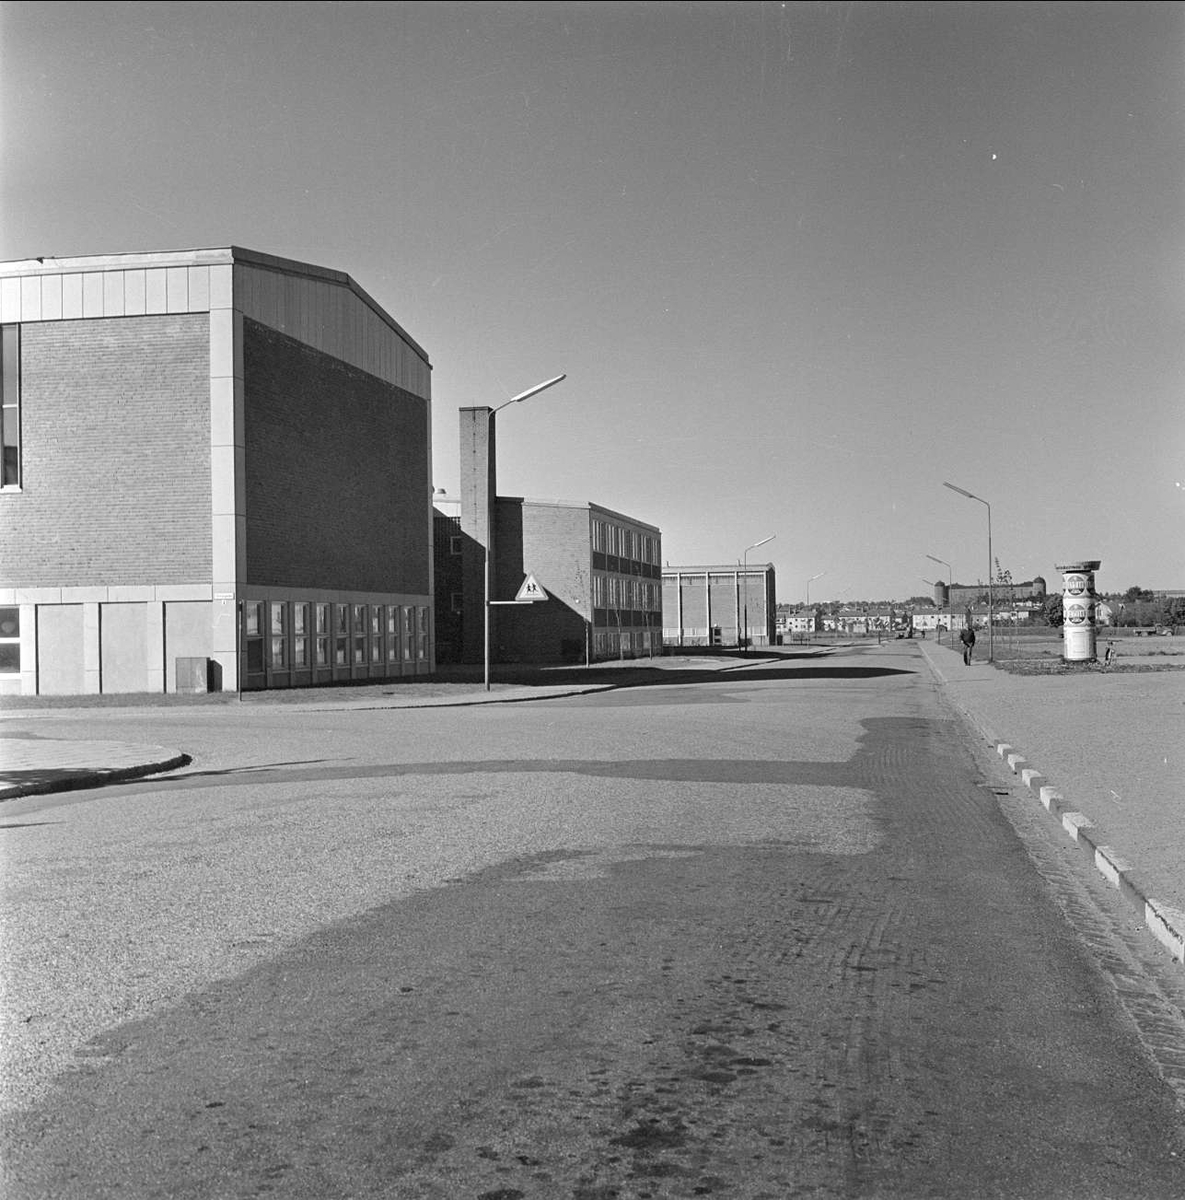 Brantingsskolan i kvarteret Tråget i Sala backe, Uppsala 1959